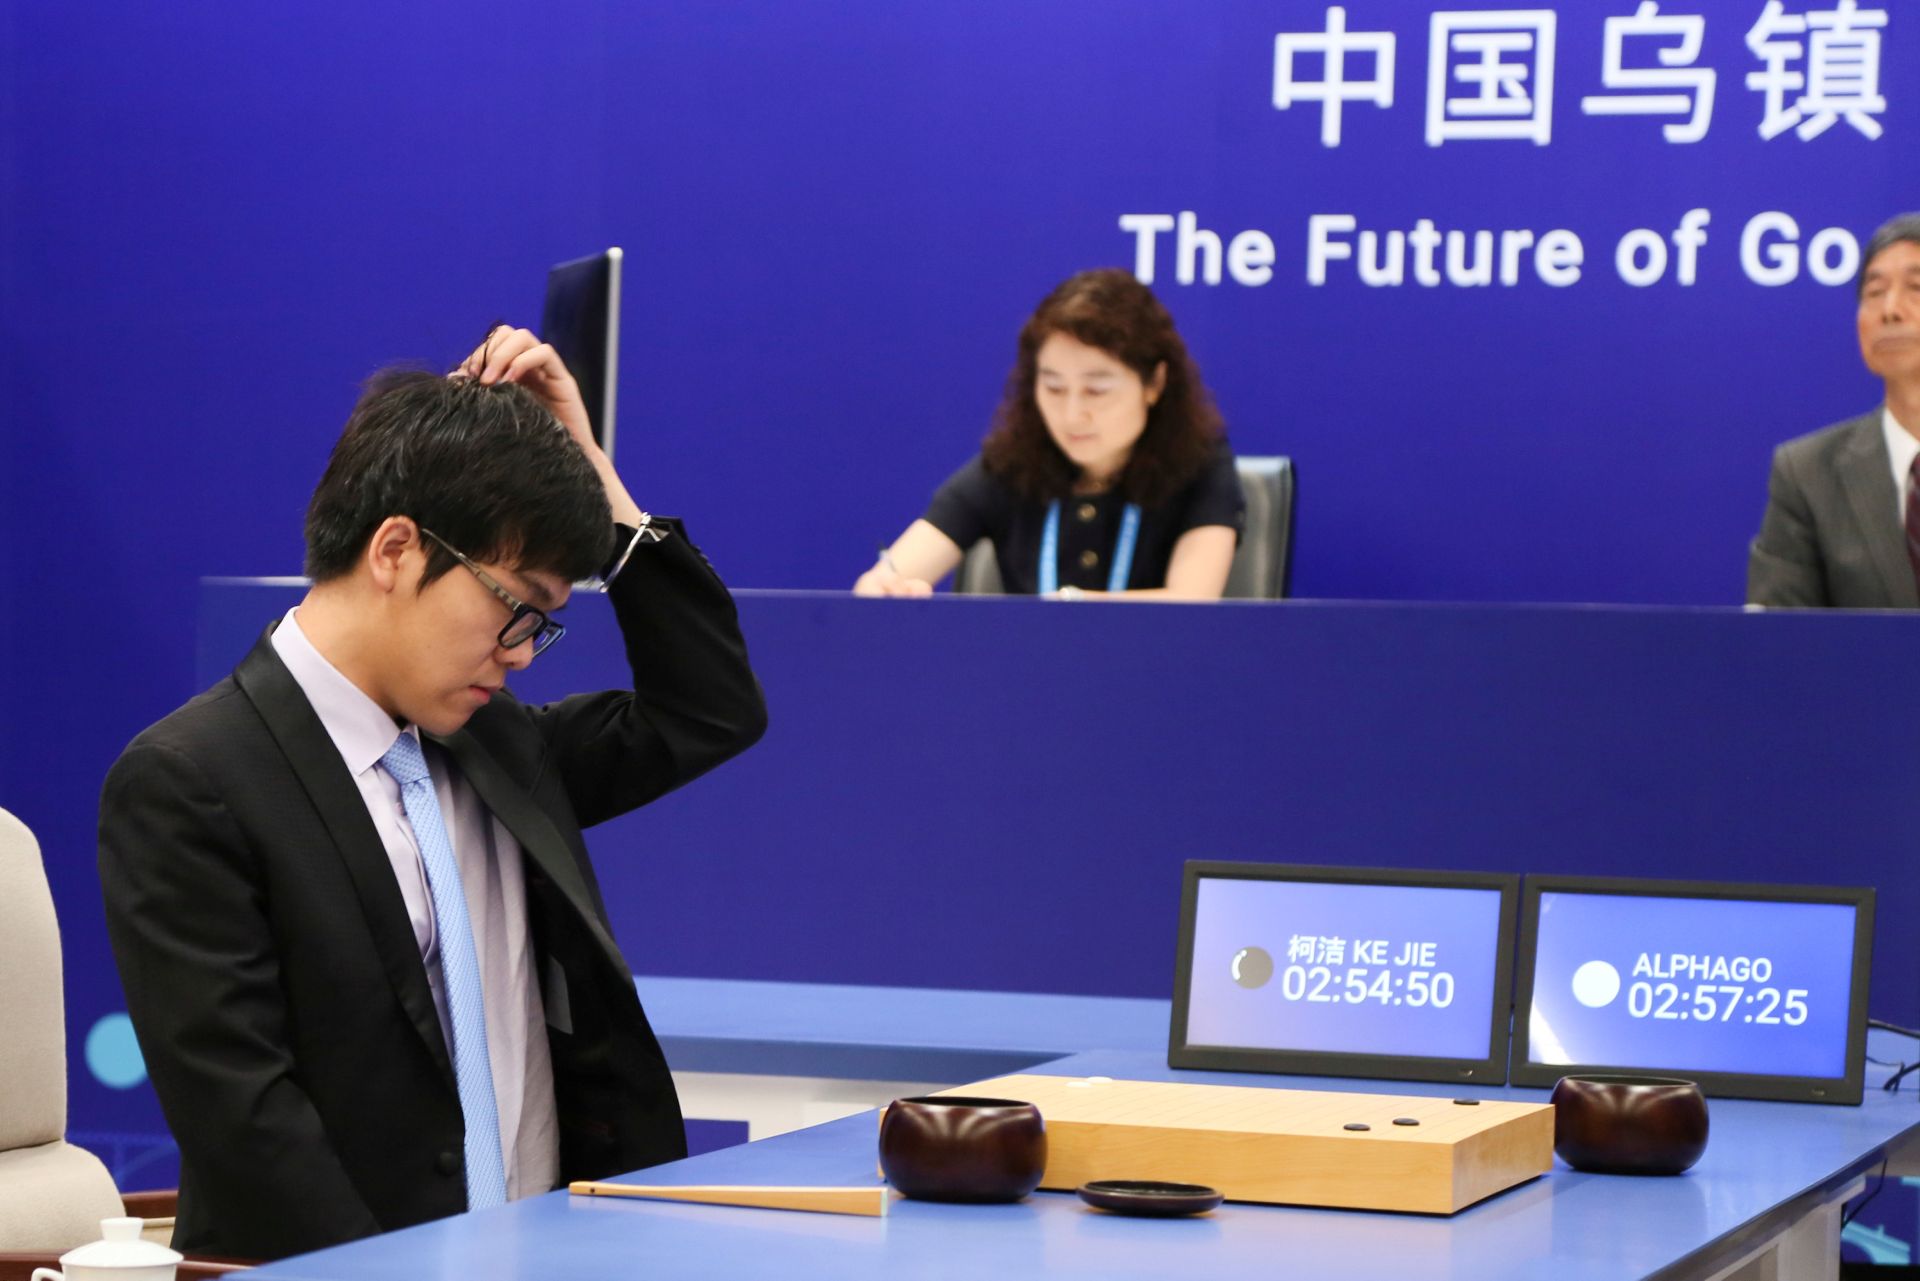 Đại kiện tướng Ke Jie trong trận đấu cờ vây với AlphaGo